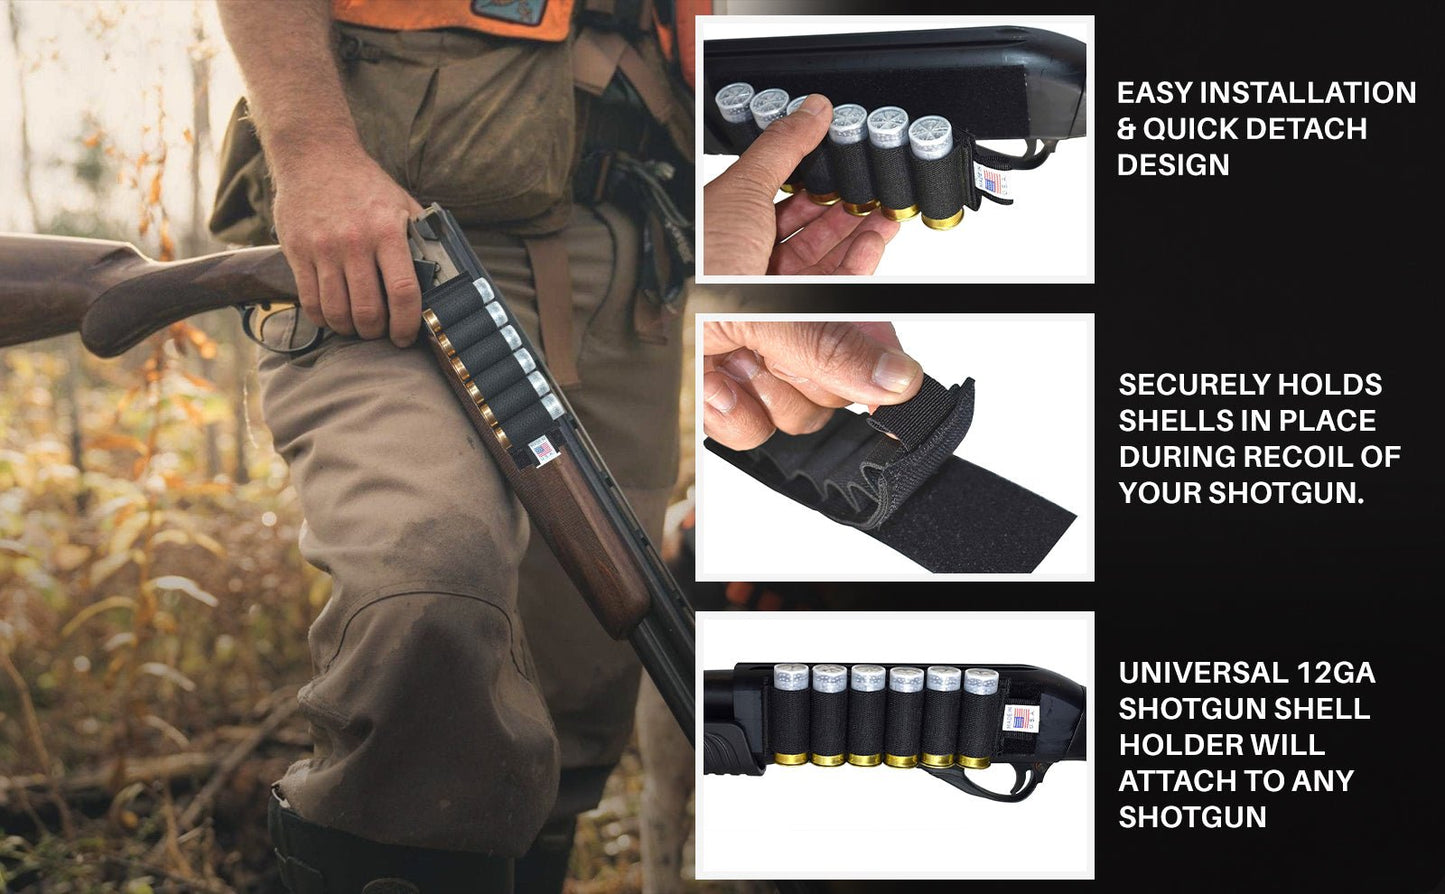 Trinity ammo pouch 12 gauge for Mossberg 835 Ulti-Mag shotgun shell holder slug. - TRINITY SUPPLY INC